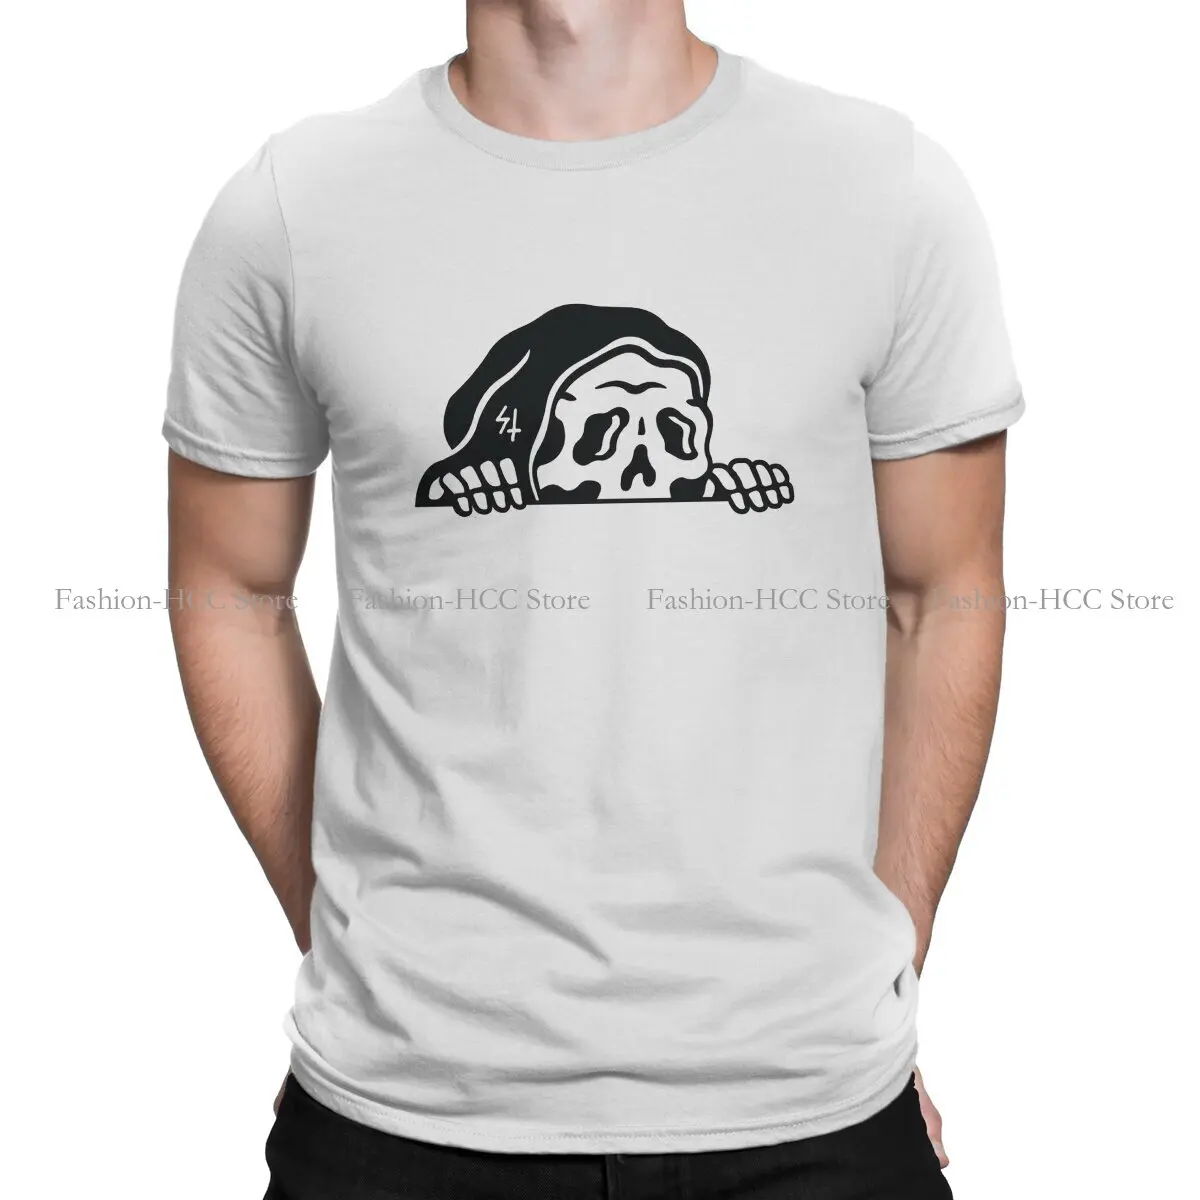 Мужская футболка Sons Of Anarchy, базовые повседневные свитшоты Mower hidden, футболка из полиэстера высокого качества, новый дизайн, пушистая